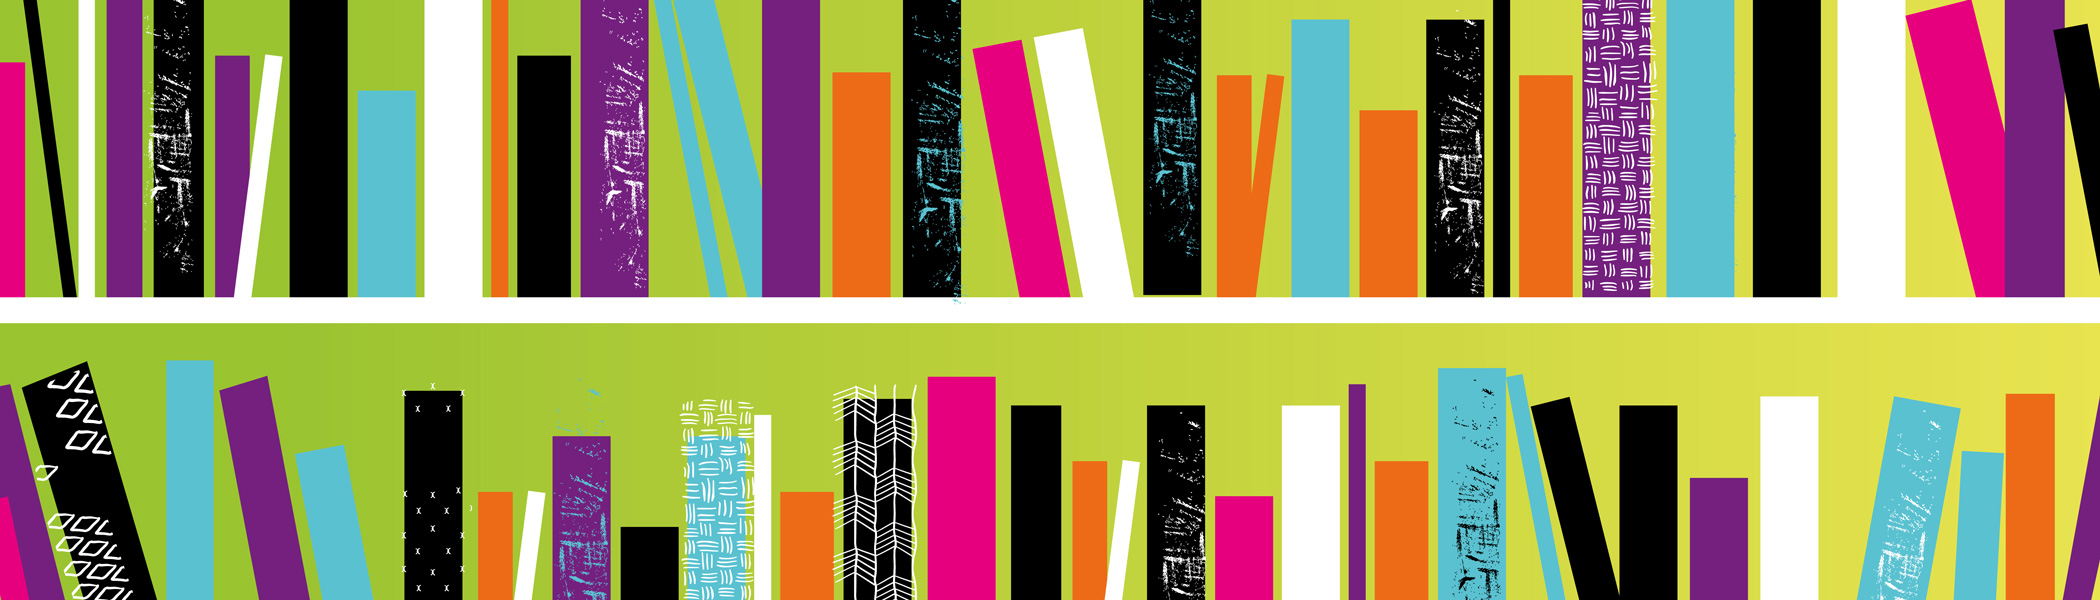 Illustration of books on shelves